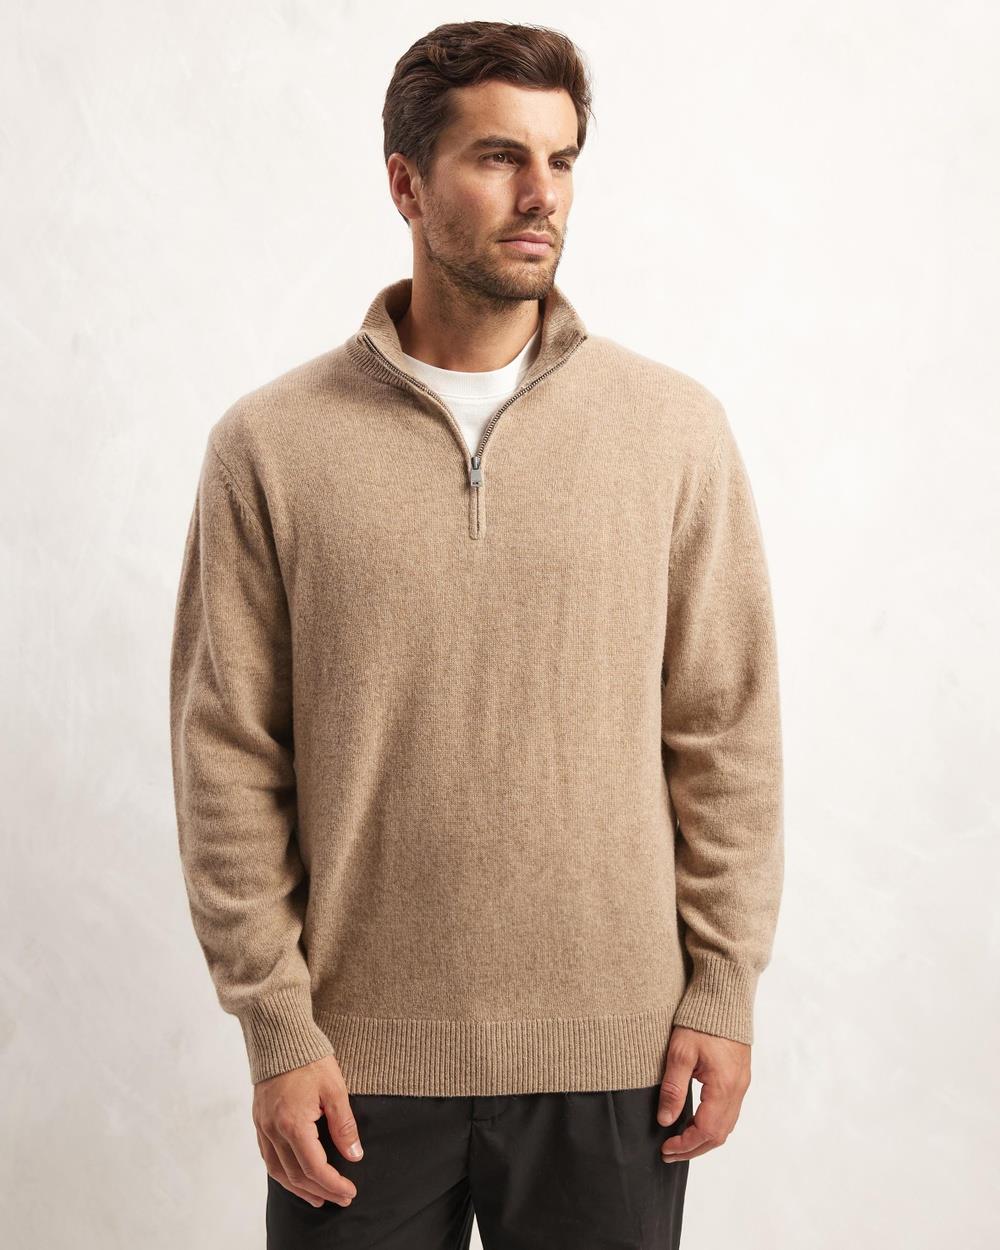 AERE - Premium Wool Half Zip Sweater - Sweats (Oat) Premium Wool Half-Zip Sweater